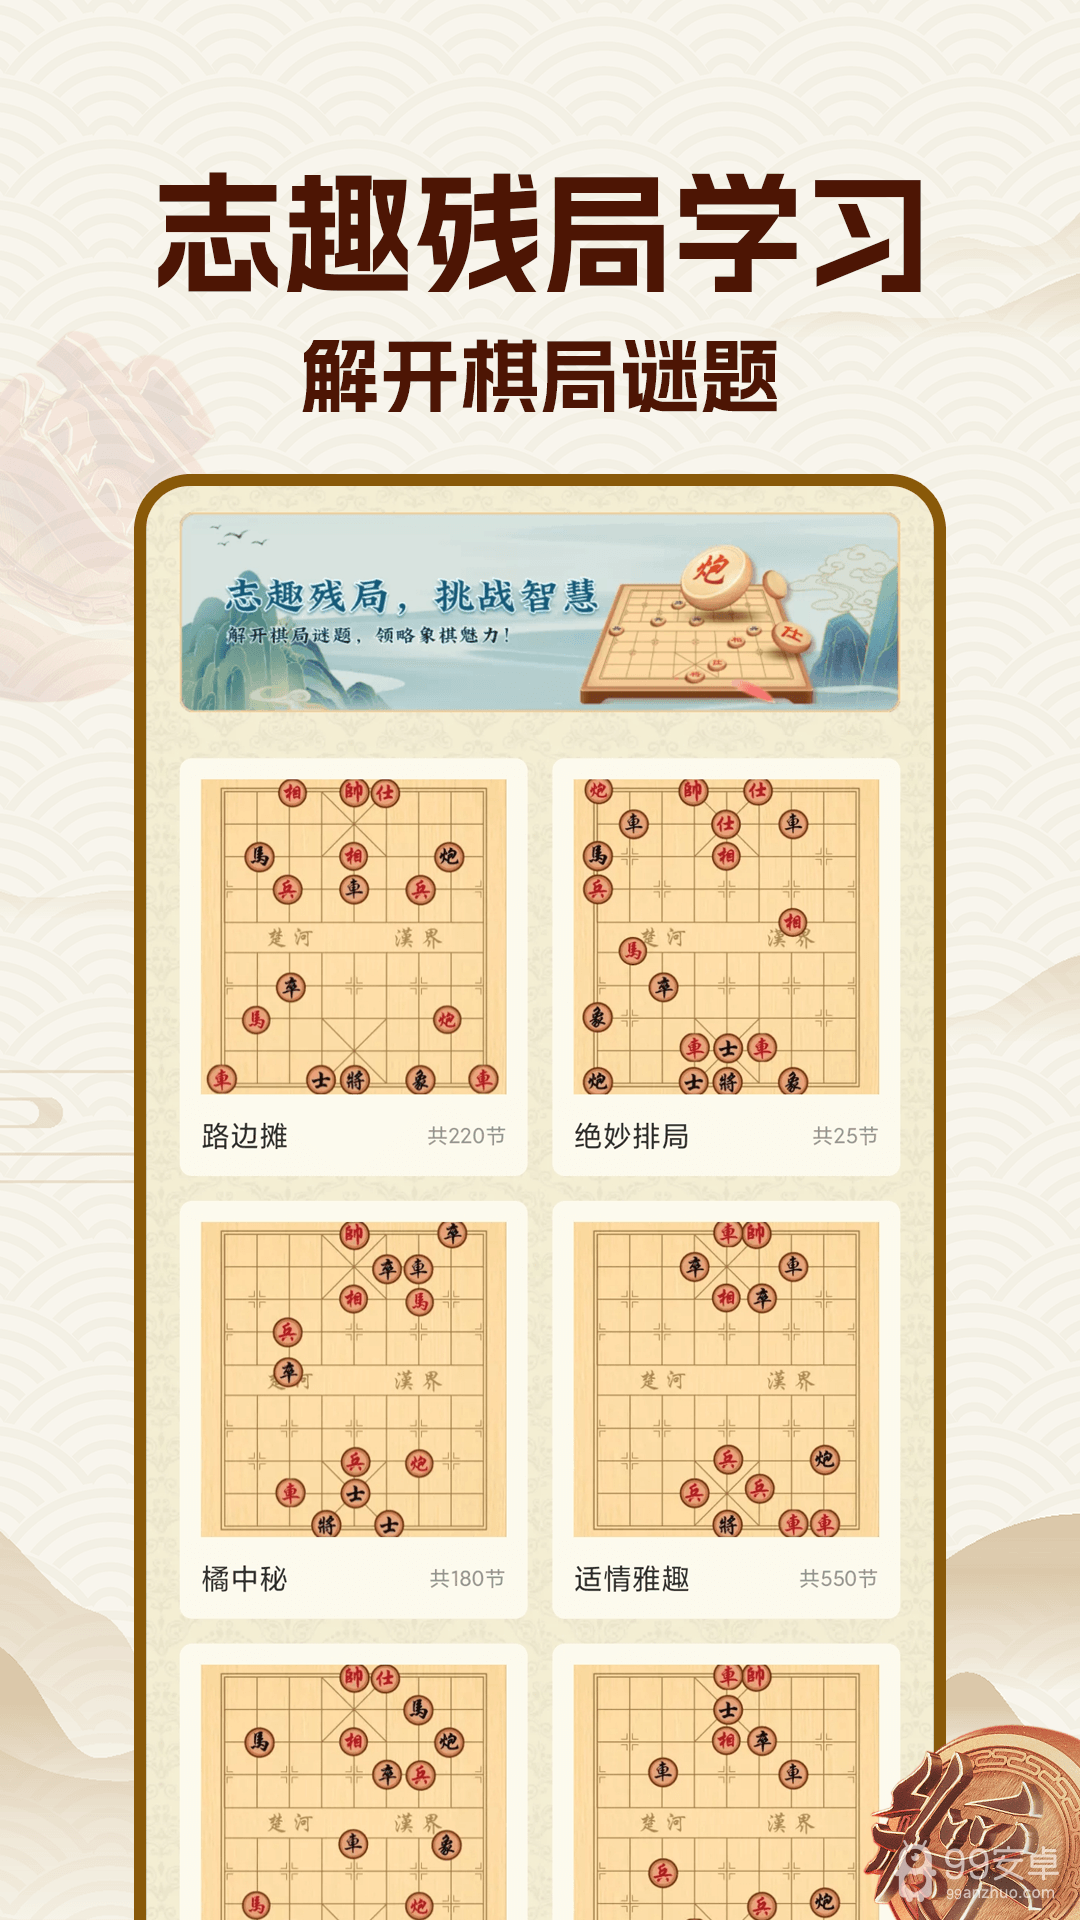 中国象棋大师